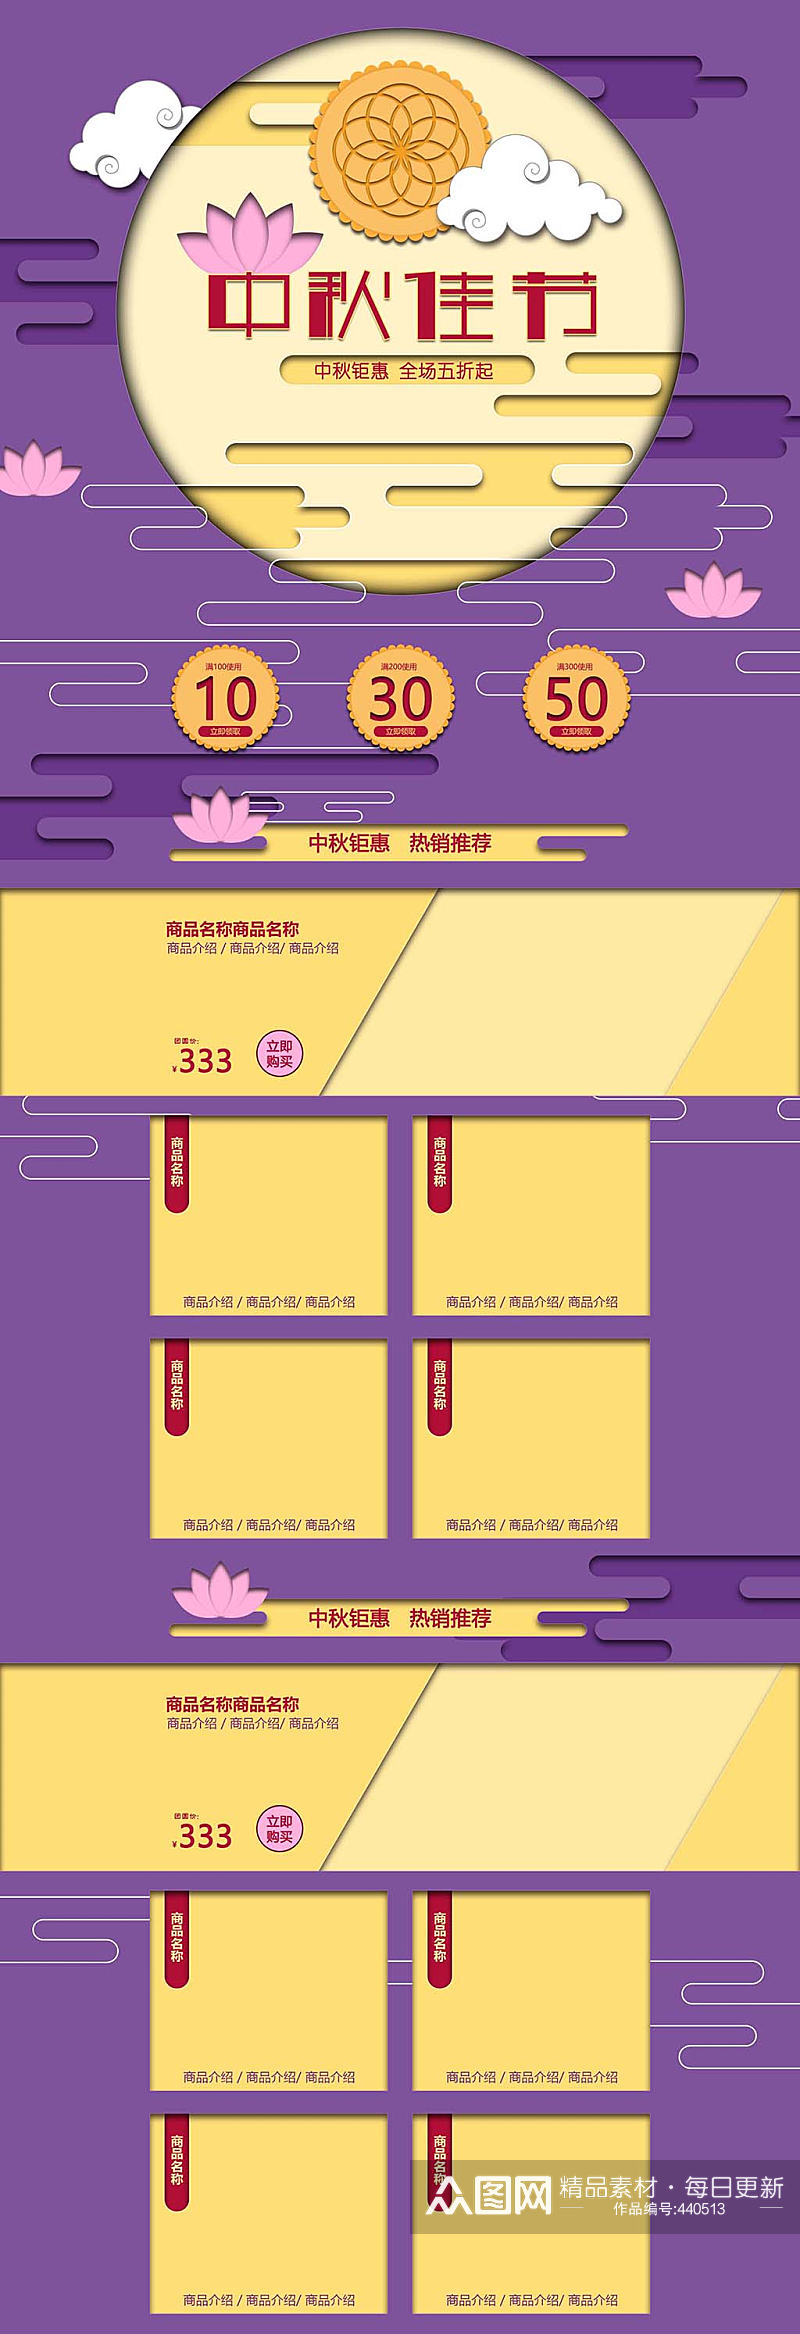 紫色中式风格中秋节首页素材